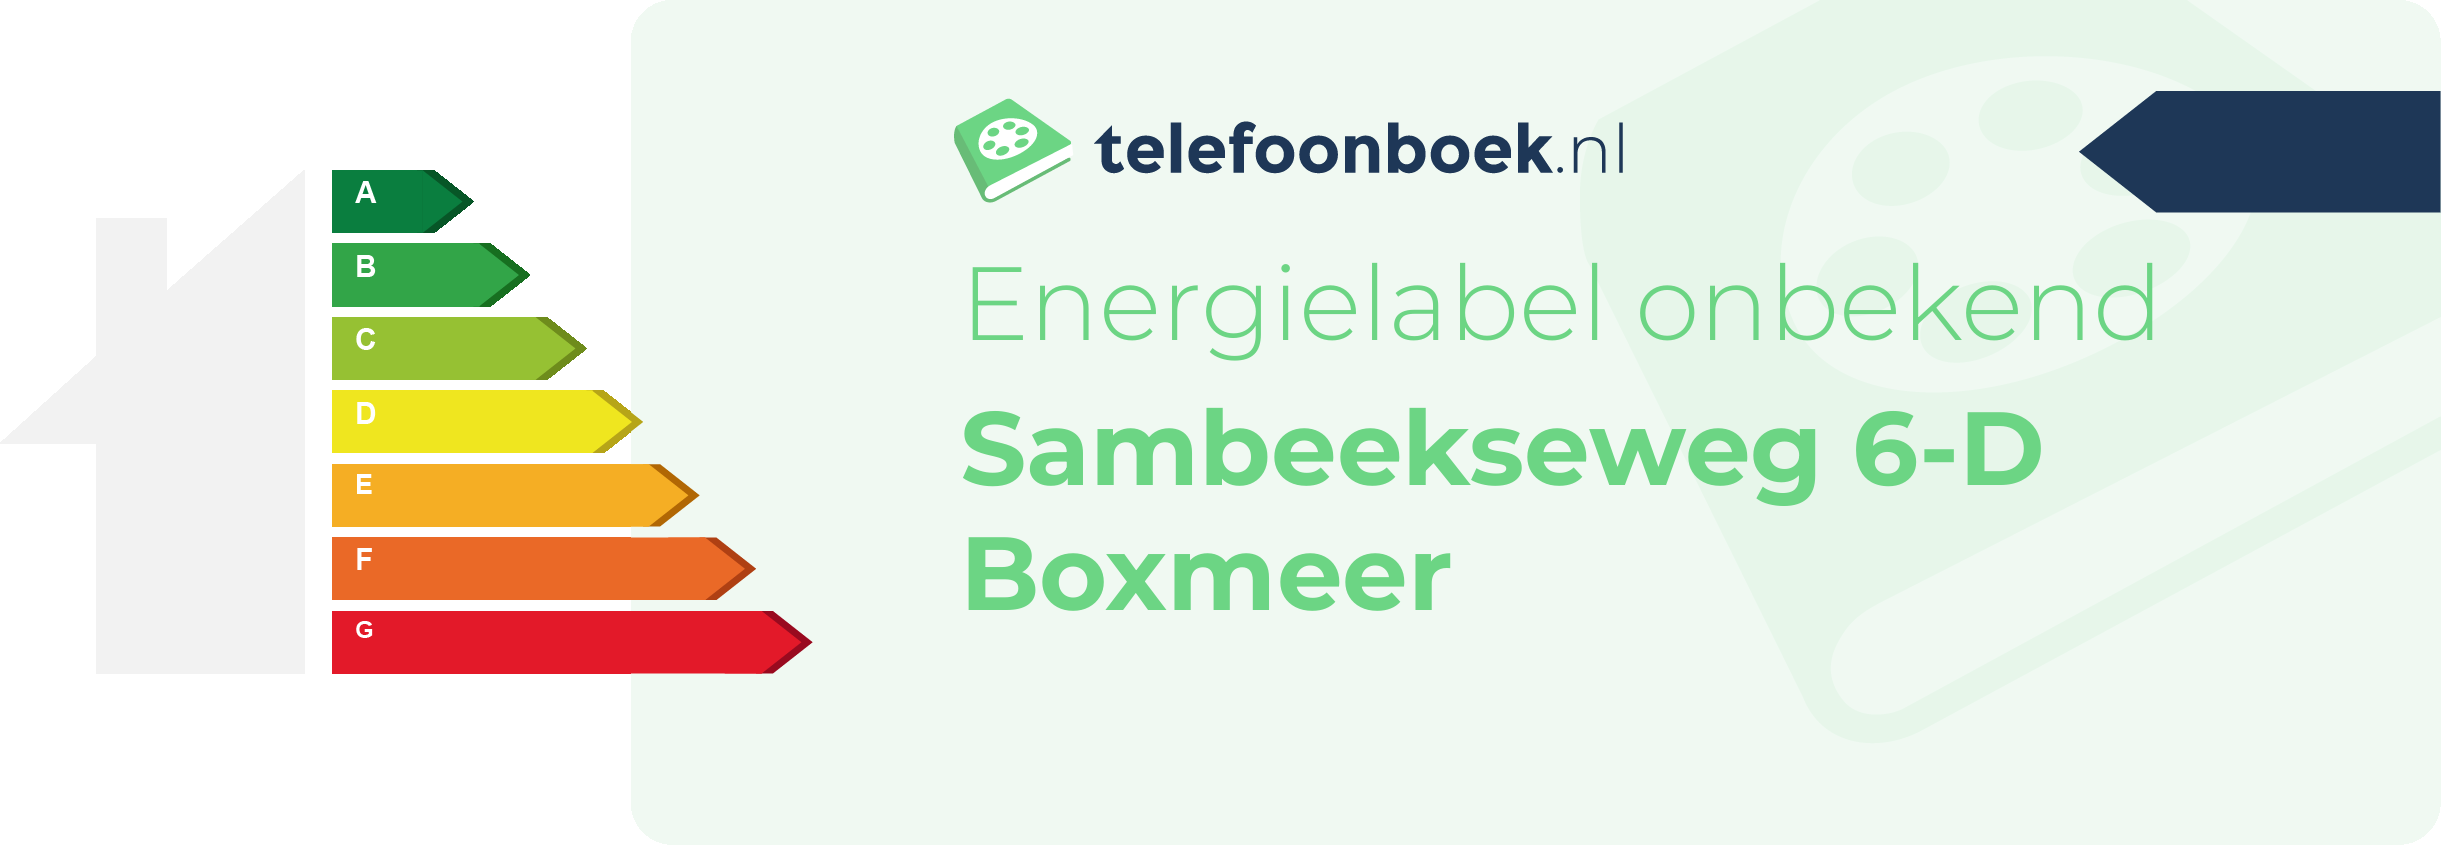 Energielabel Sambeekseweg 6-D Boxmeer